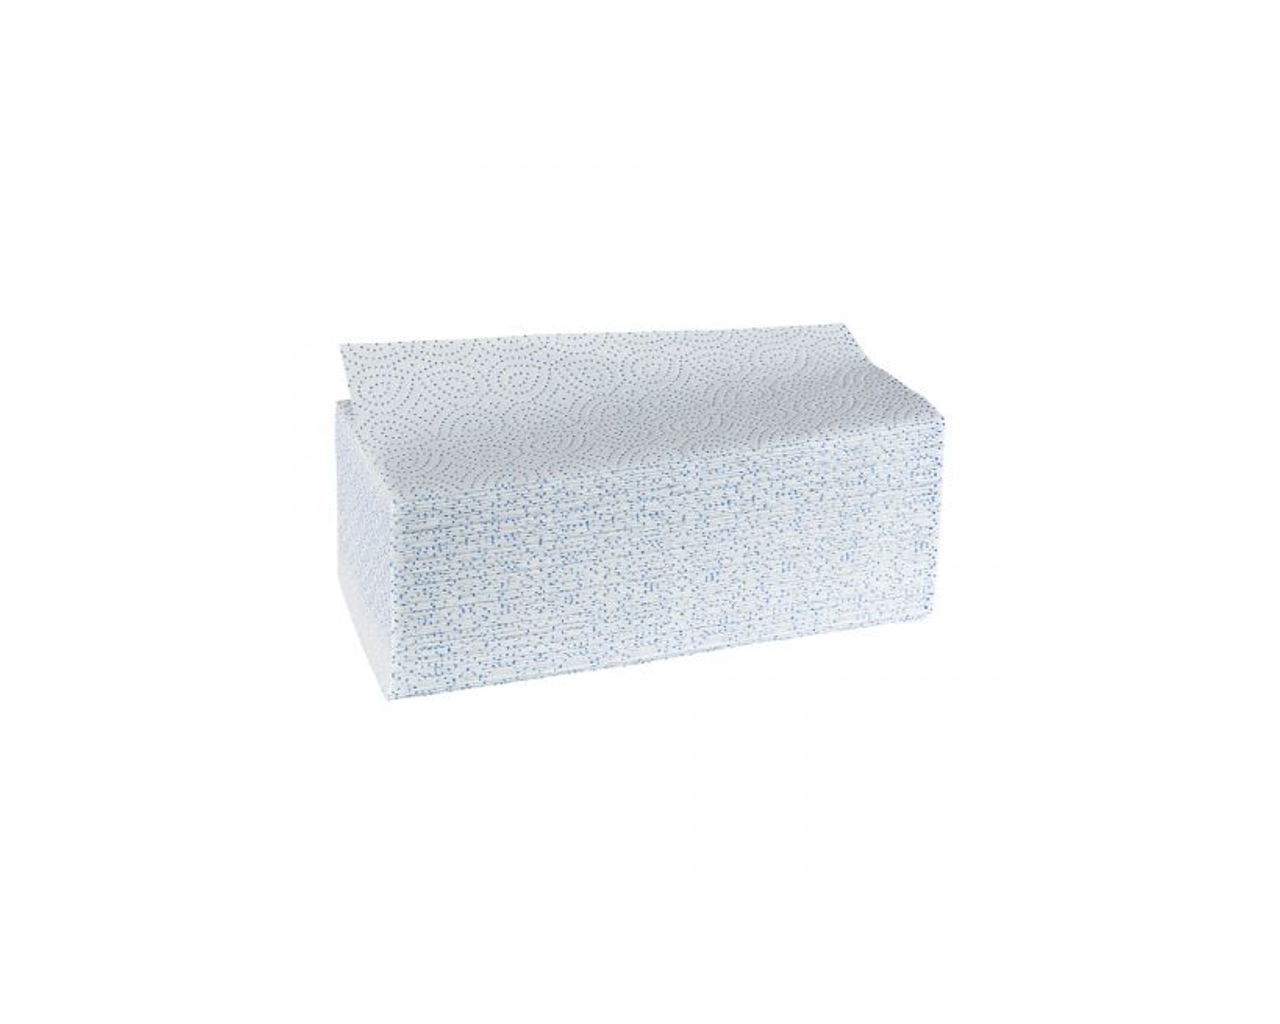 Ręczniki papierowe składane ZZ MERIDA PREMIUM, białe, celulozowe, karton 3200 szt.